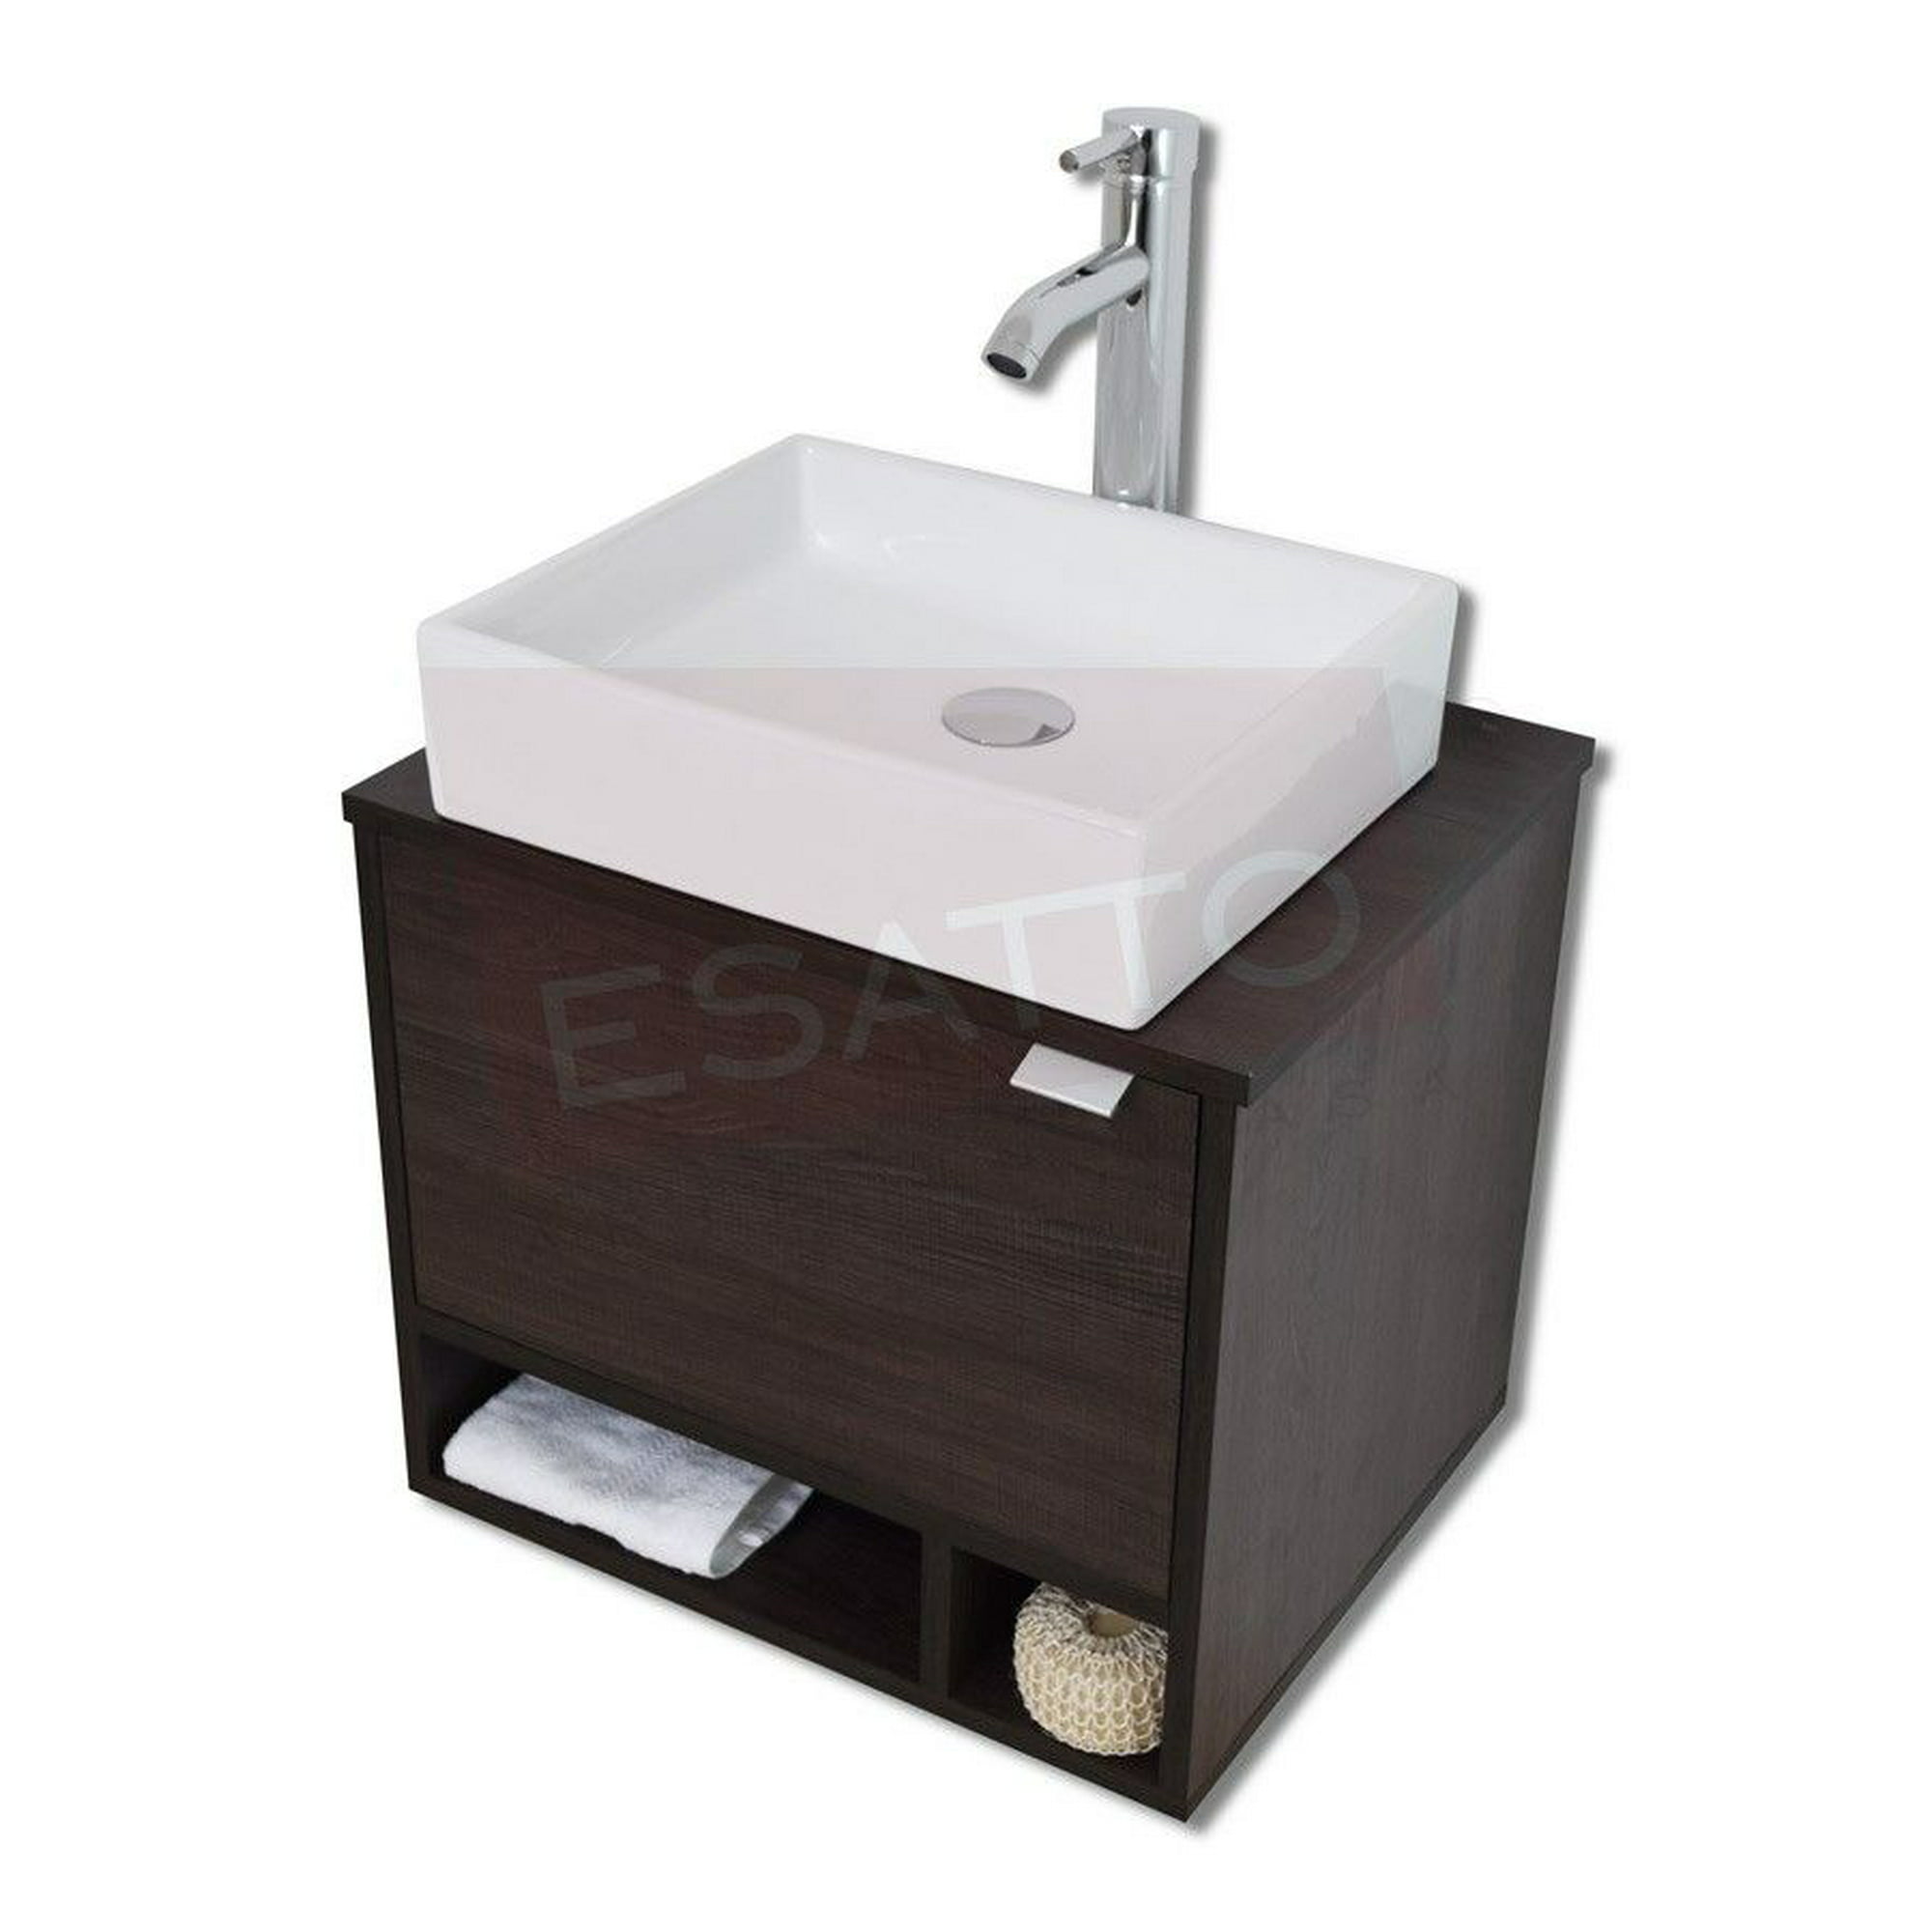 Esatto® mueble dcta platz lavabo cerámica llave desagüe listo para instalar esatto dcta platz